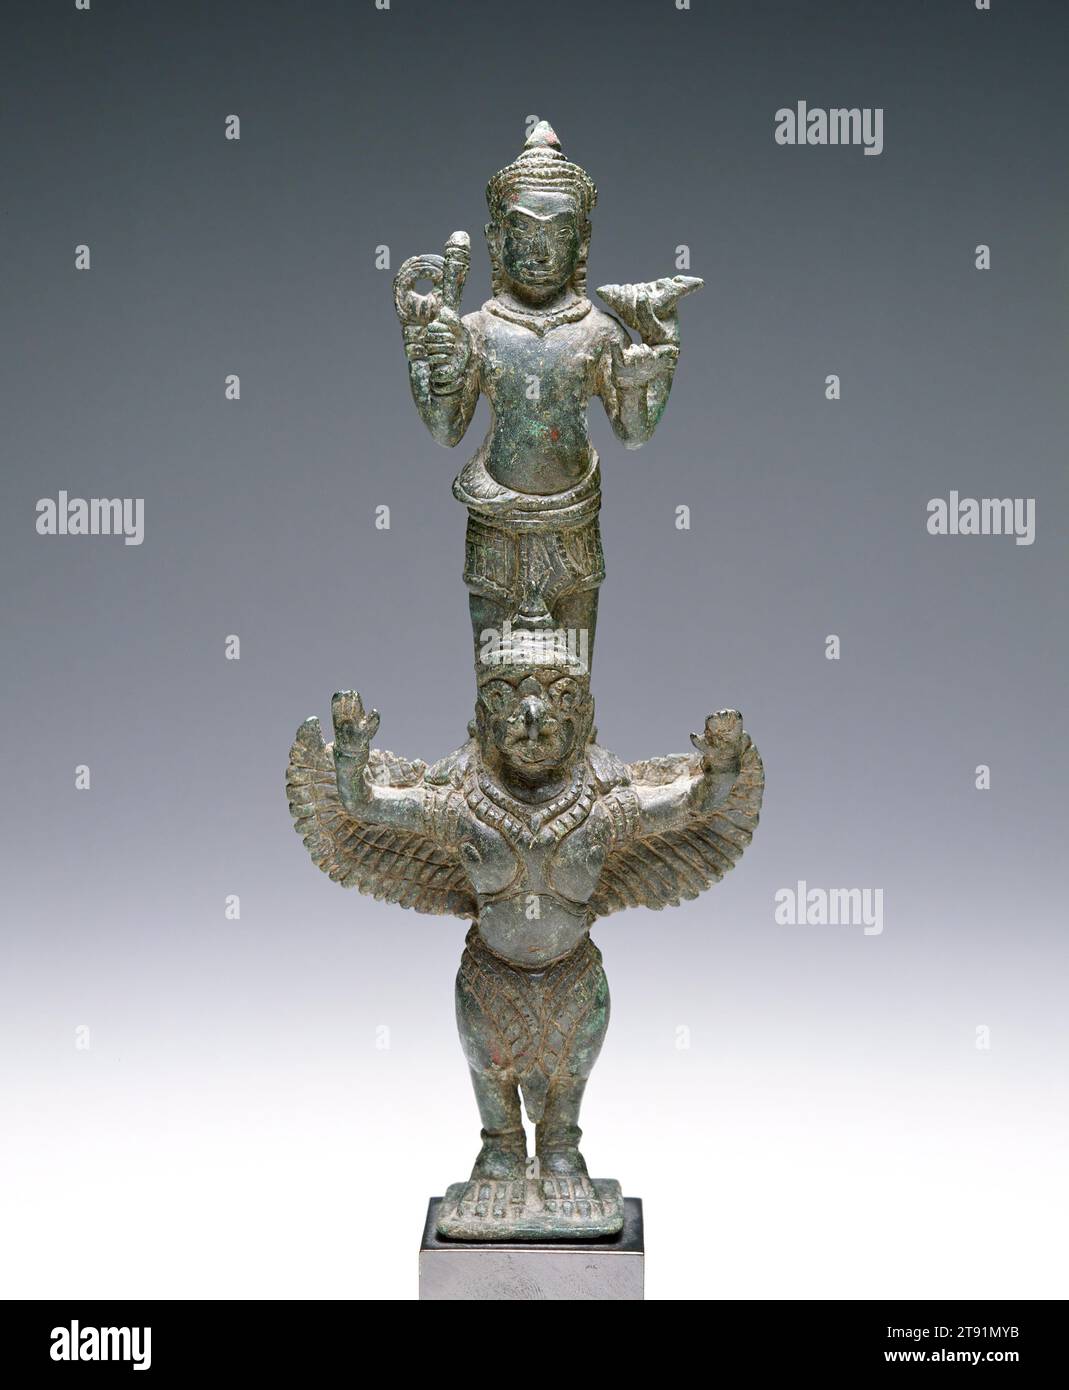 Vishnu sur Garuda, 12e-13e siècle, 7 1/8 x 3 1/8 x 1 7/16 po. (18,1 x 7,94 x 3,65 cm), Bronze, Cambodge, 12e-13e siècle, dans l'hindouisme, Vishnu est le conservateur et le mainteneur de l'ordre établi. Alors que Shiva est le Seigneur du commencement et de la fin, Vishnu est la divinité qui supervise le terrain intermédiaire, évite les extrêmes et maintient l'orthodoxie. La représentation standard de Vishnu est un debout à quatre bras portant une couronne. Il porte une coquille de conque, du lotus, un club et un disque. Son véhicule est l'oiseau Garuda représenté ici sous la forme habituelle en tant que partie humaine, partie oiseau Banque D'Images